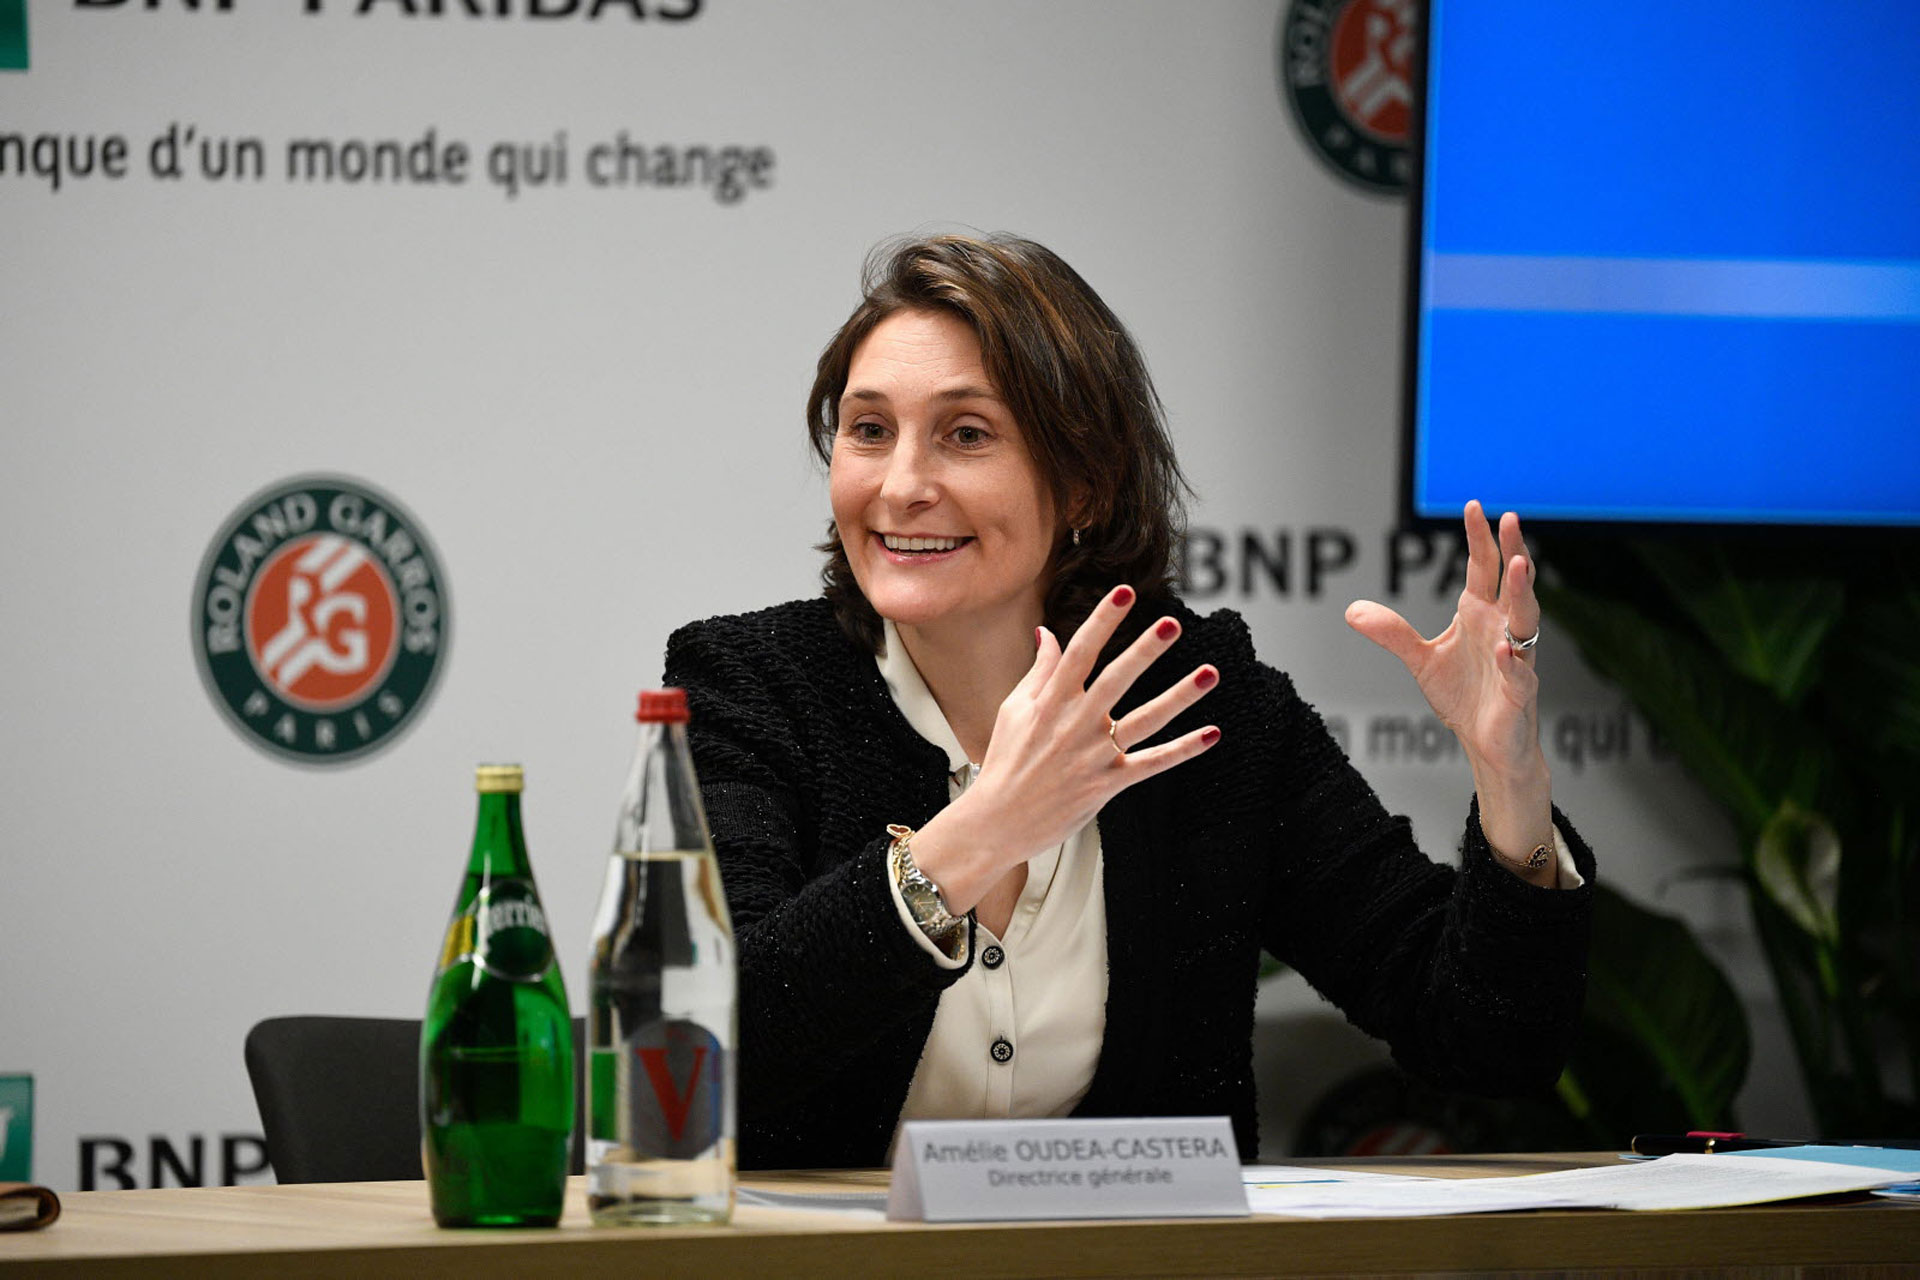 Amélie Oudéa-Castéra, Ministra de Deportes y Juegos Olímpicos y Paralímpicos de Francia